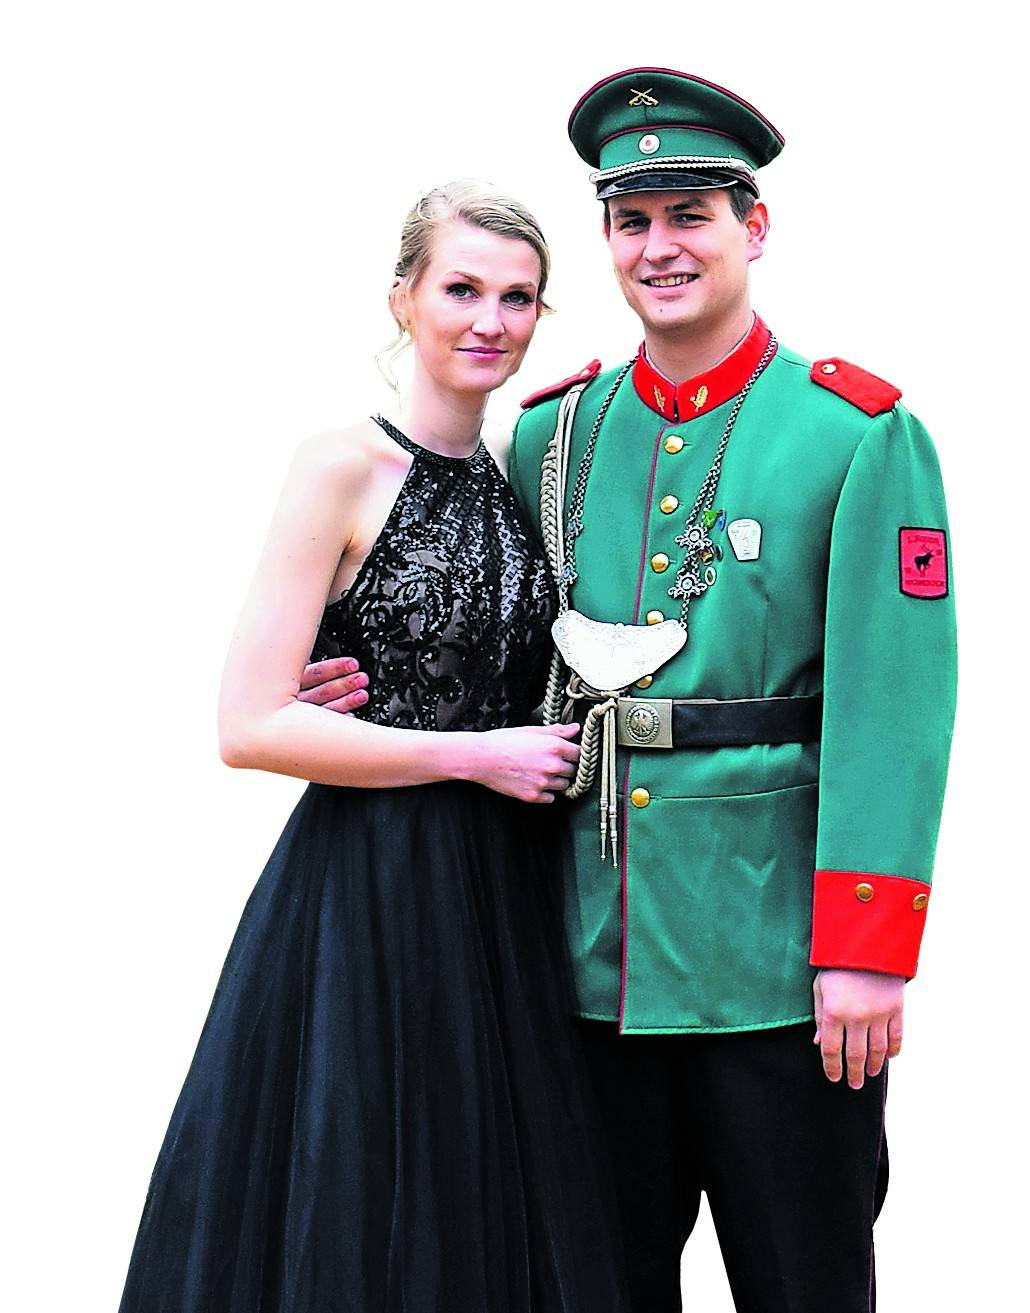  Nadine Vierzigmann gemeinsam mit Sebastian Schmidt. Am Freitag werden die beiden zum Königspaar gekrönt.  